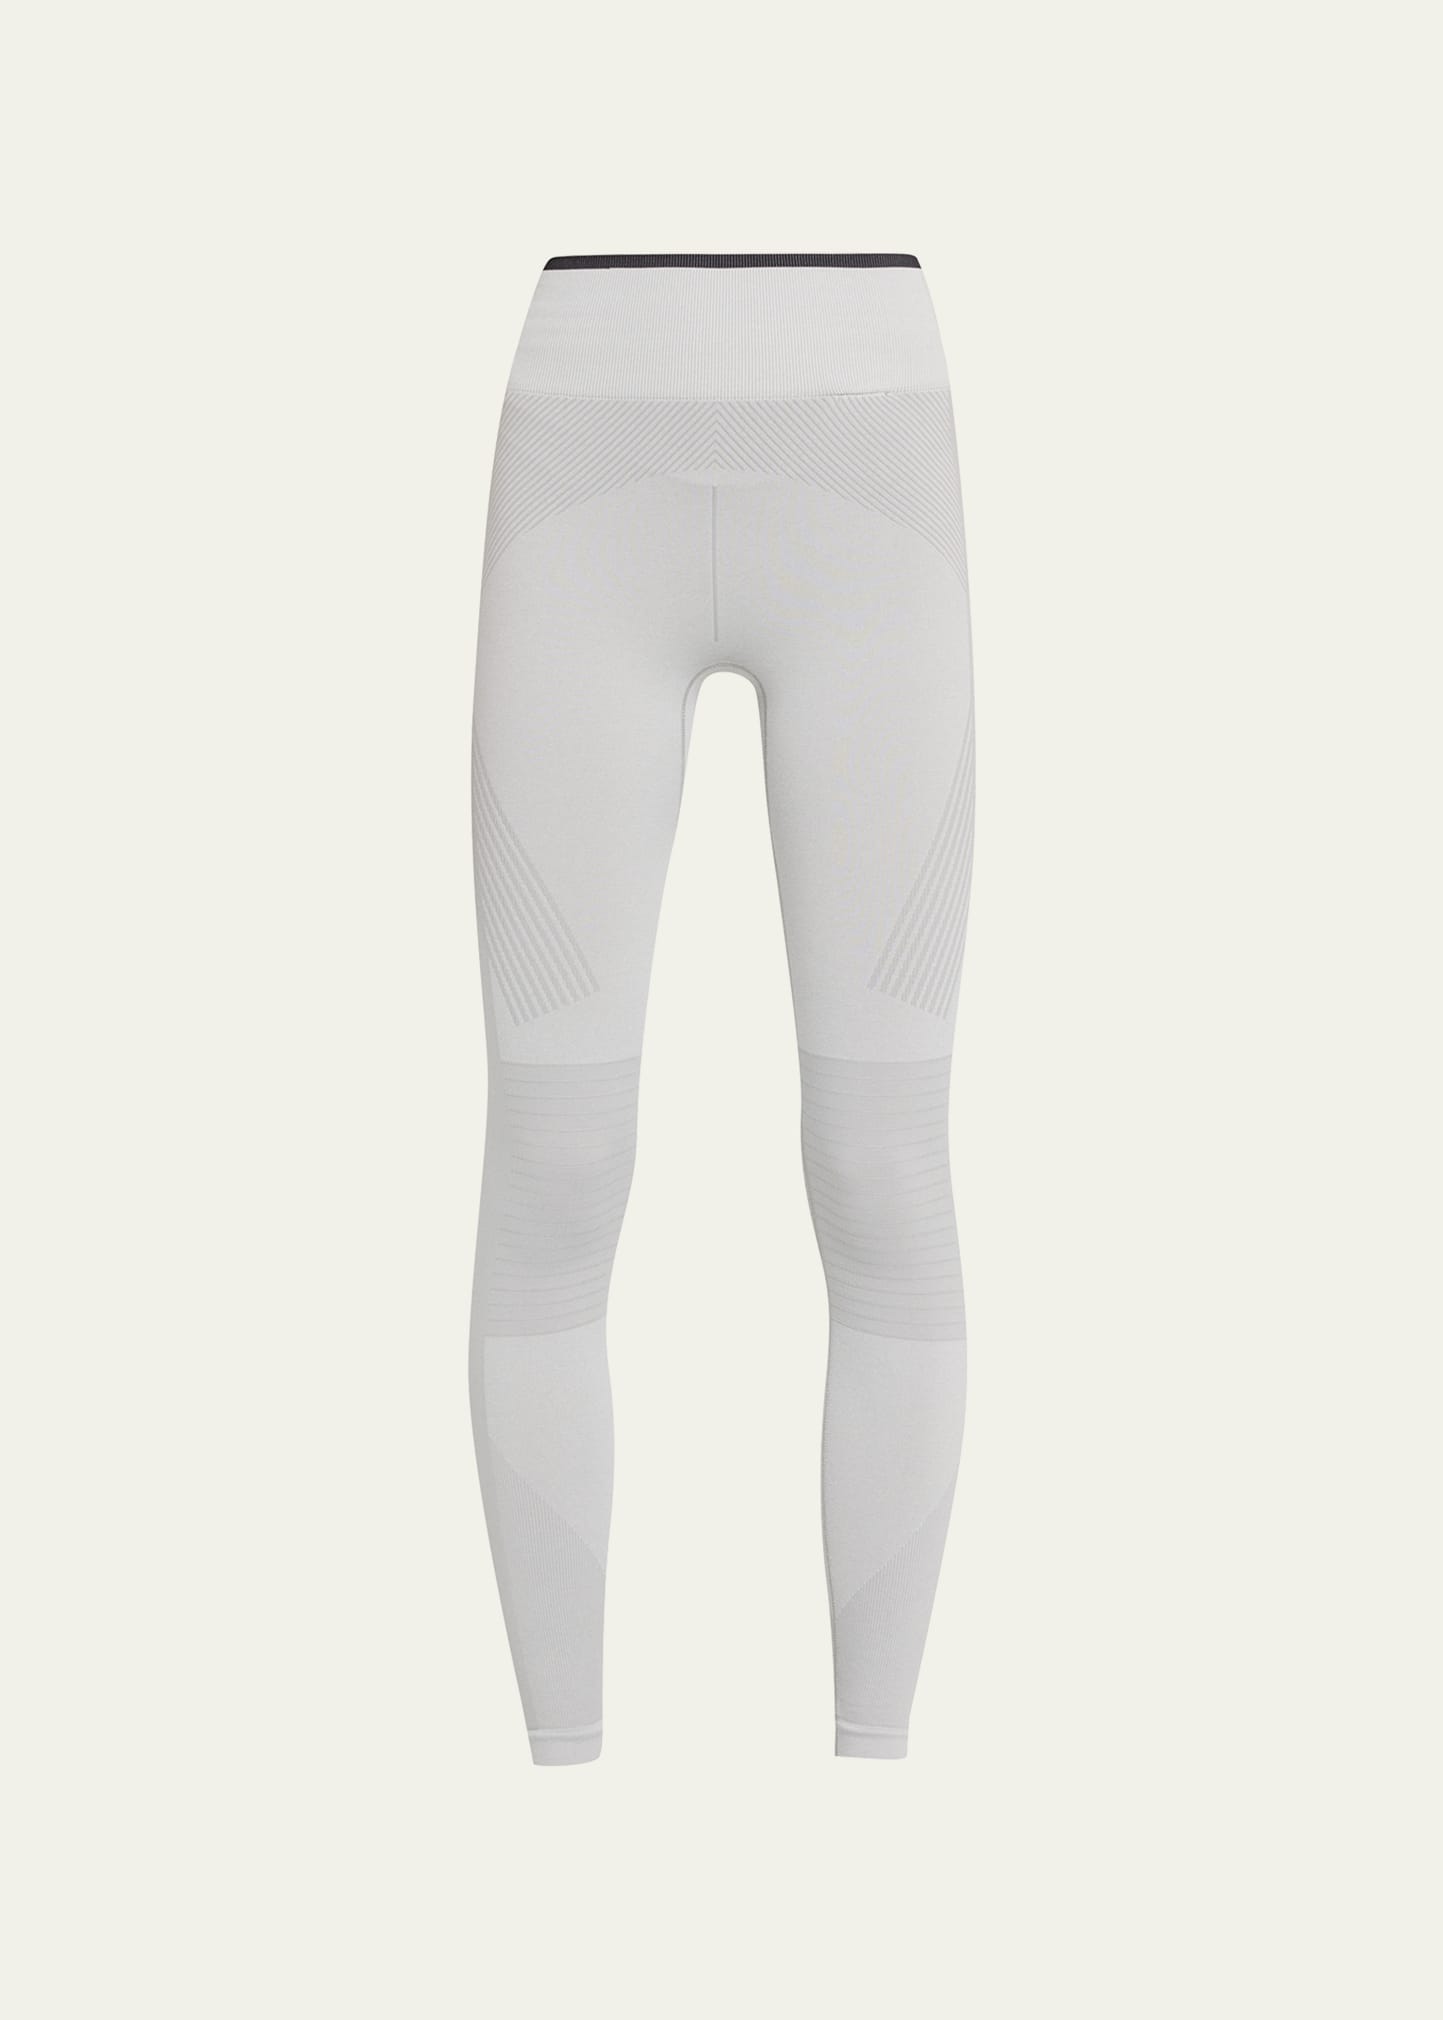 Adidas By Stella Mccartney Truestrength Seamless Yoga Tights In Grey